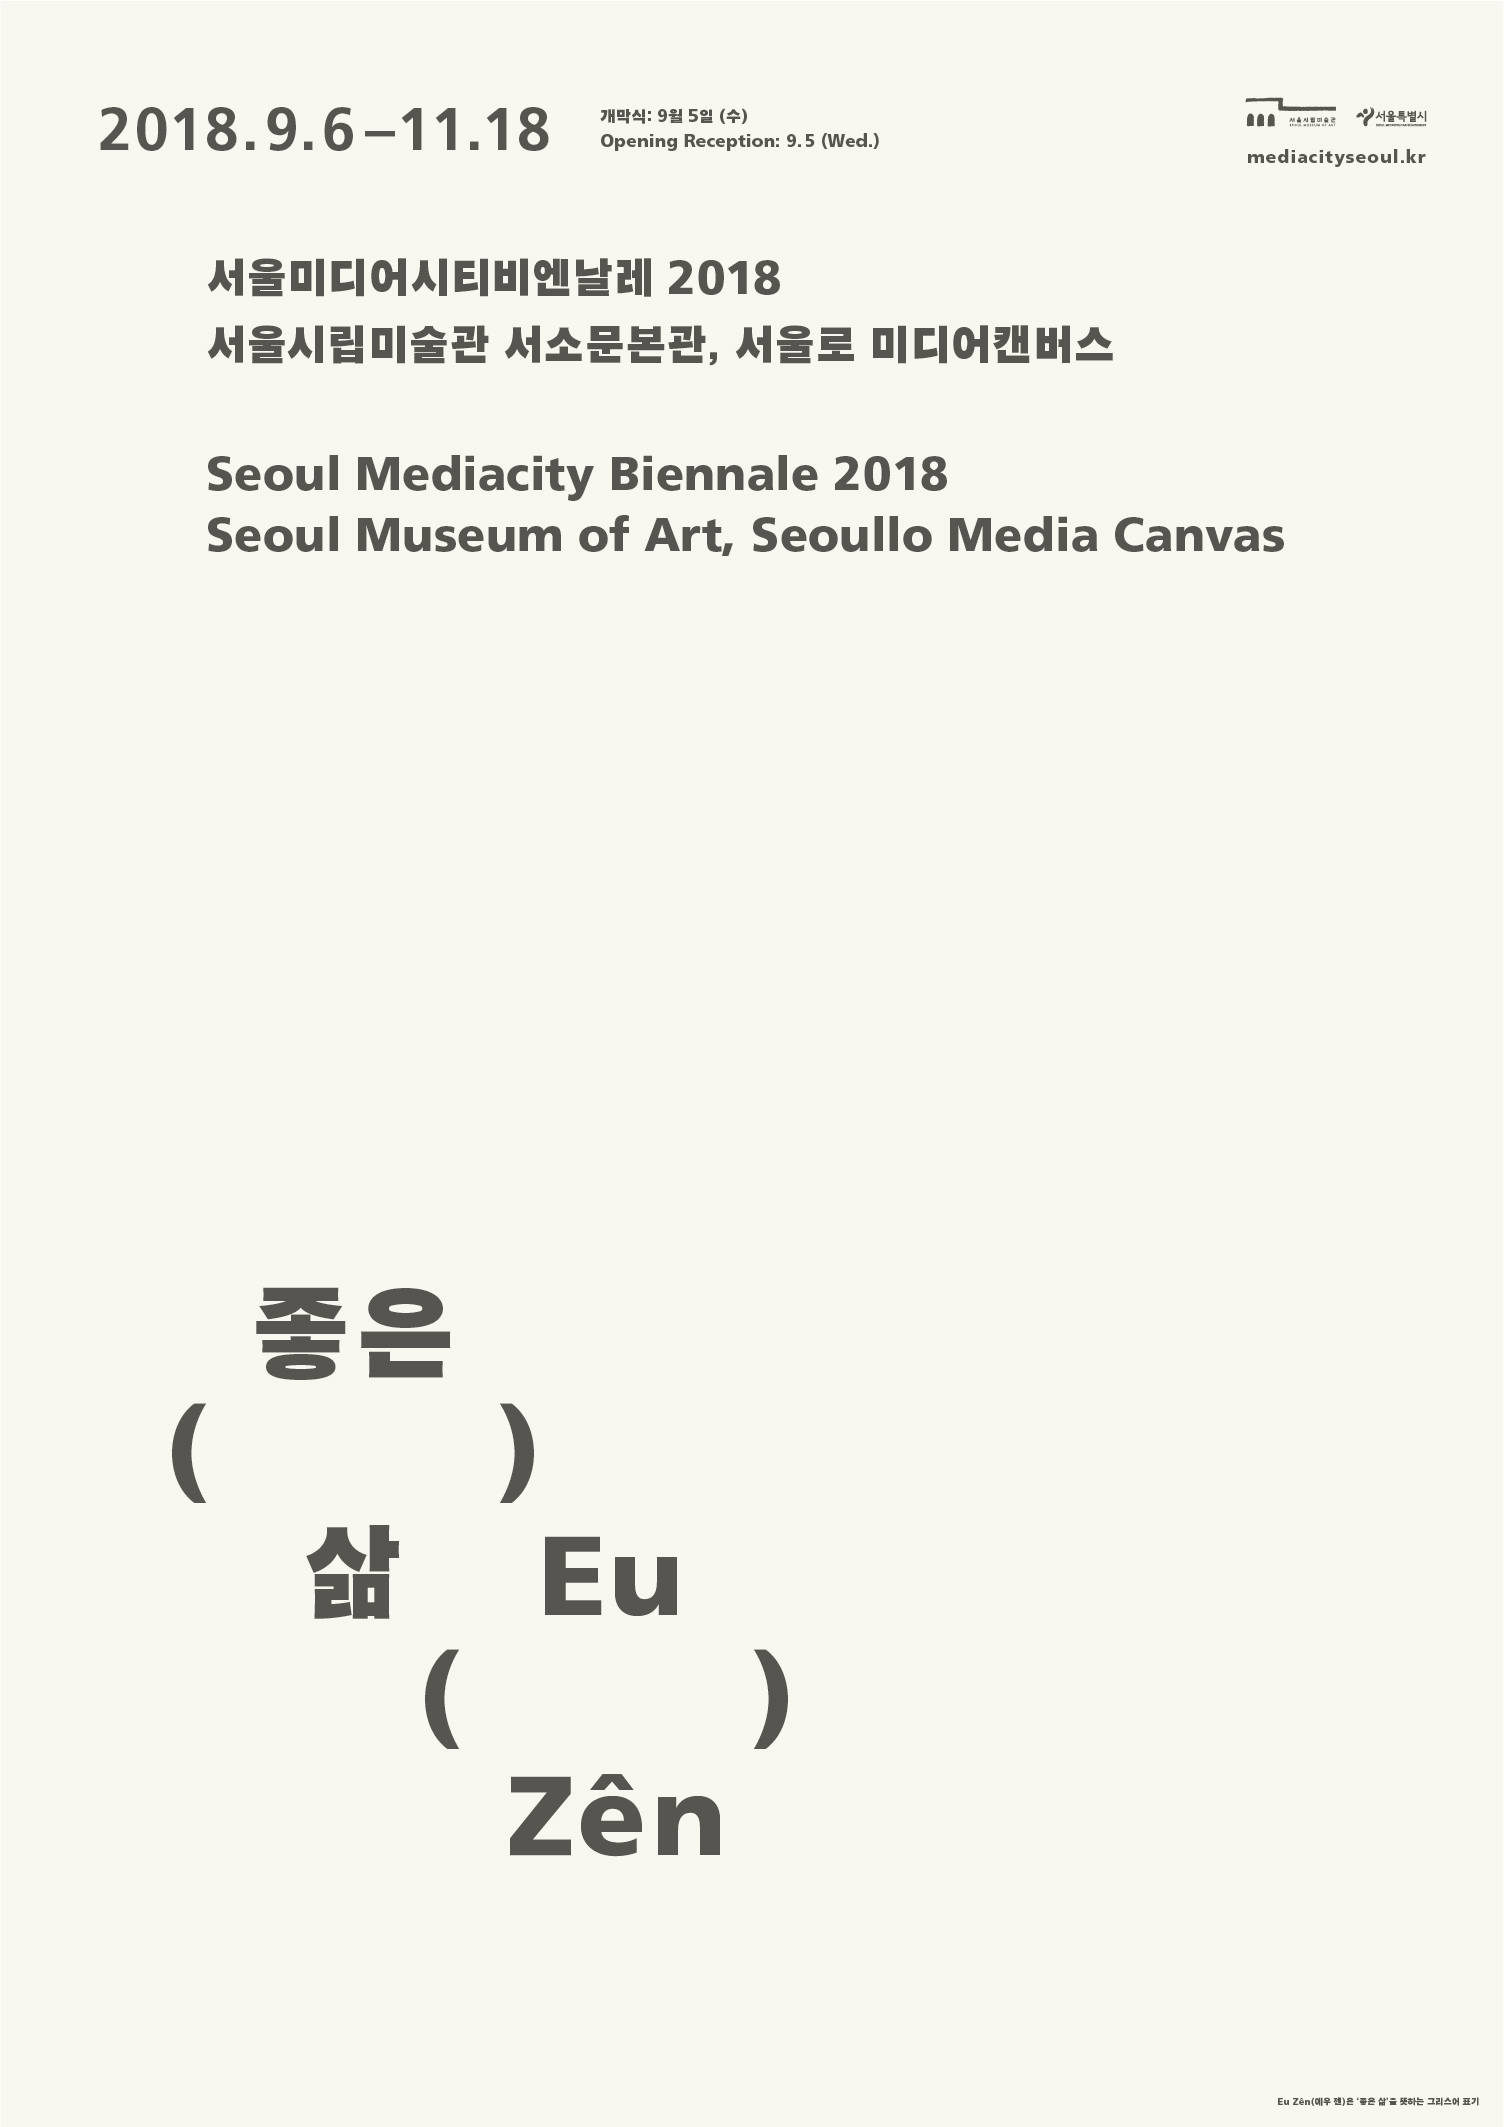 2018首爾媒體城市雙年展 〈美好人生〉Seoul Mediacity Biennale 2018 Eu Zên